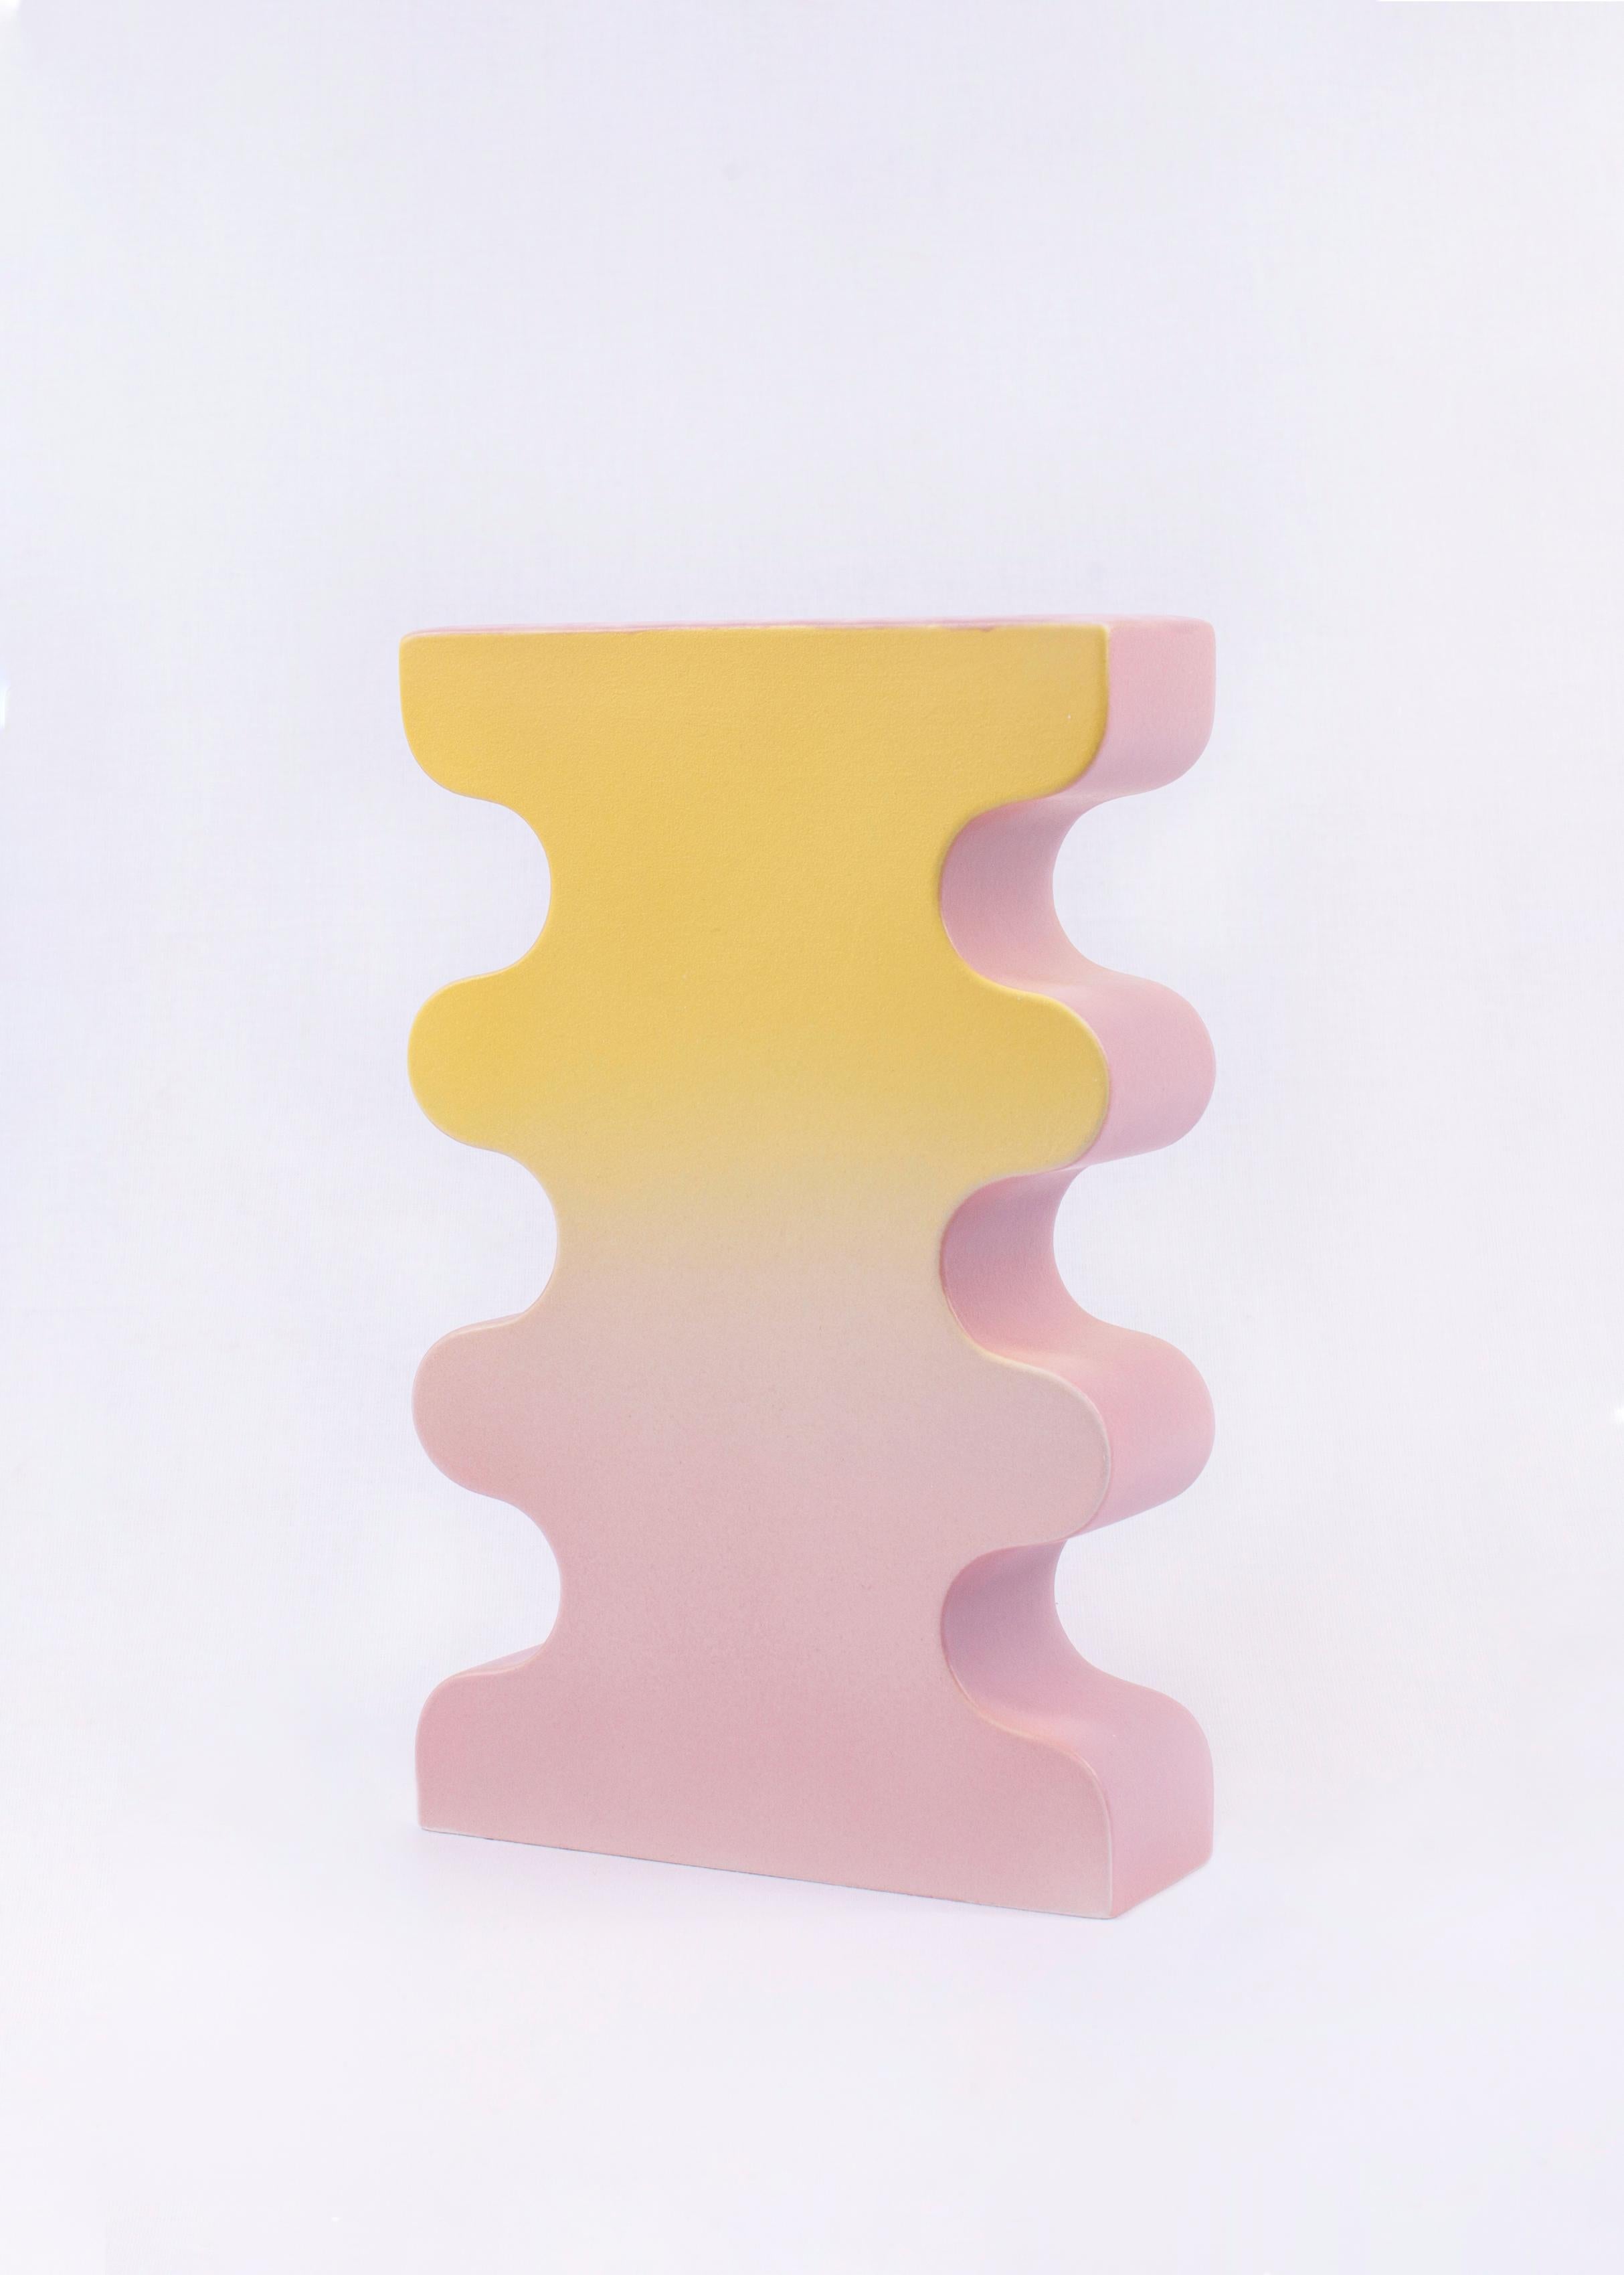 Barva-Vase N. 4 von Pani Jurek

Modell verkaufen
Farbe : Gelb matt + Lila matt 

Größe: 27 cm +17 cm x 5,5 cm. Aufgrund der Handglasur können Farben und Größe leicht variieren.

MATERIAL: handglasierte Keramik, Glasur + Engobe

Die Barva